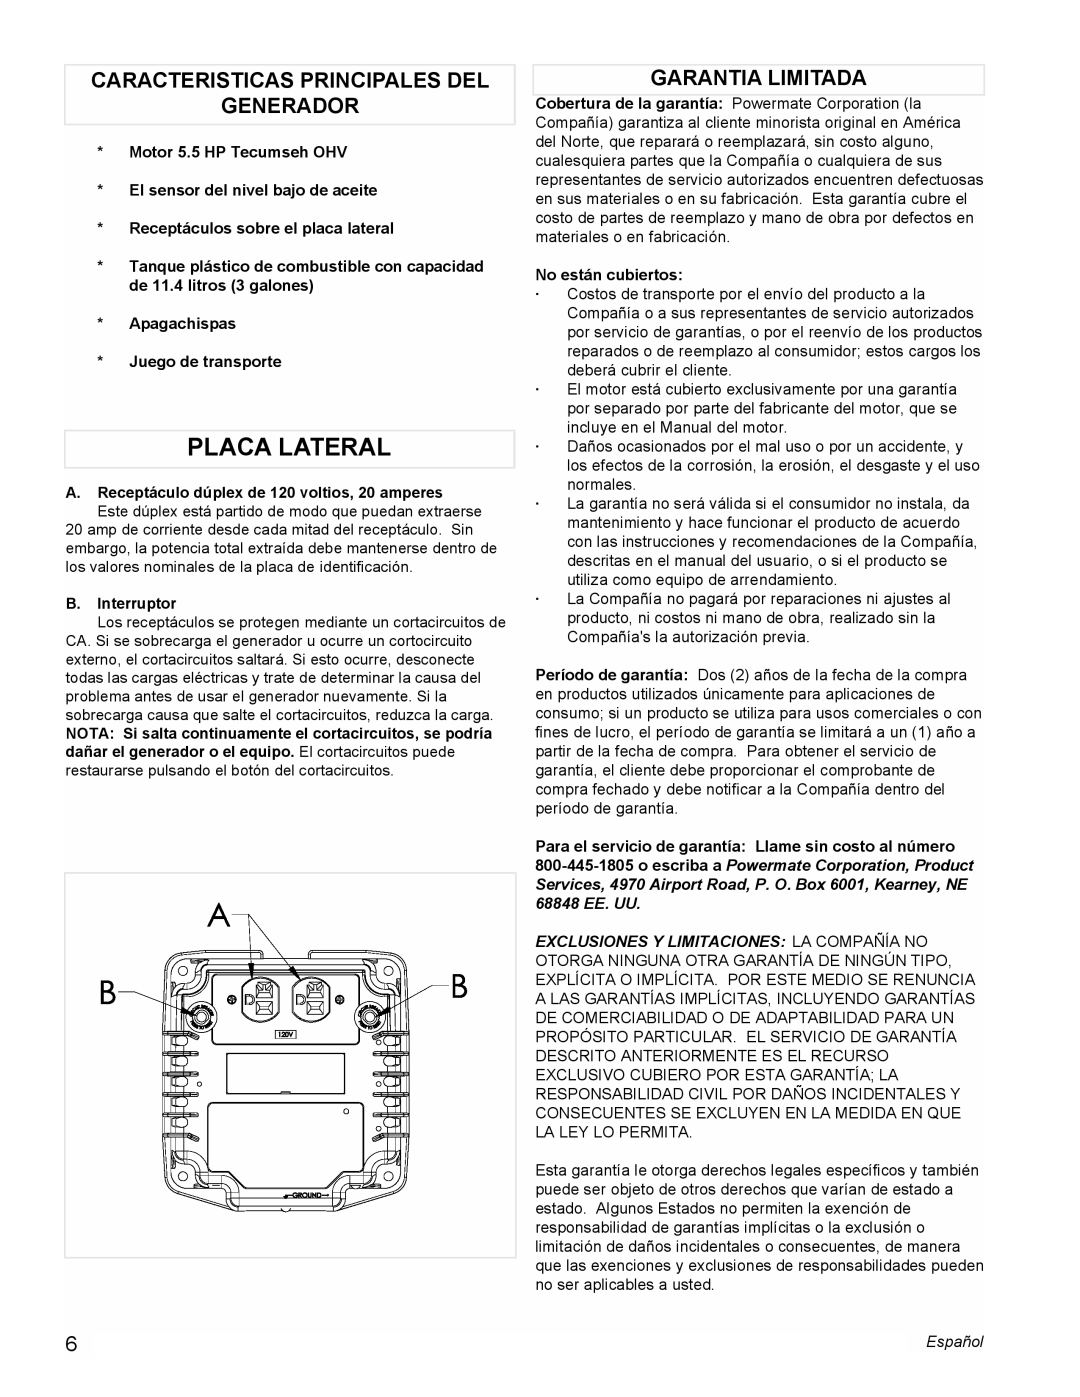 Powermate PMC523202 manual Placa Lateral, Caracteristicas Principales Del Generador, Garantia Limitada 